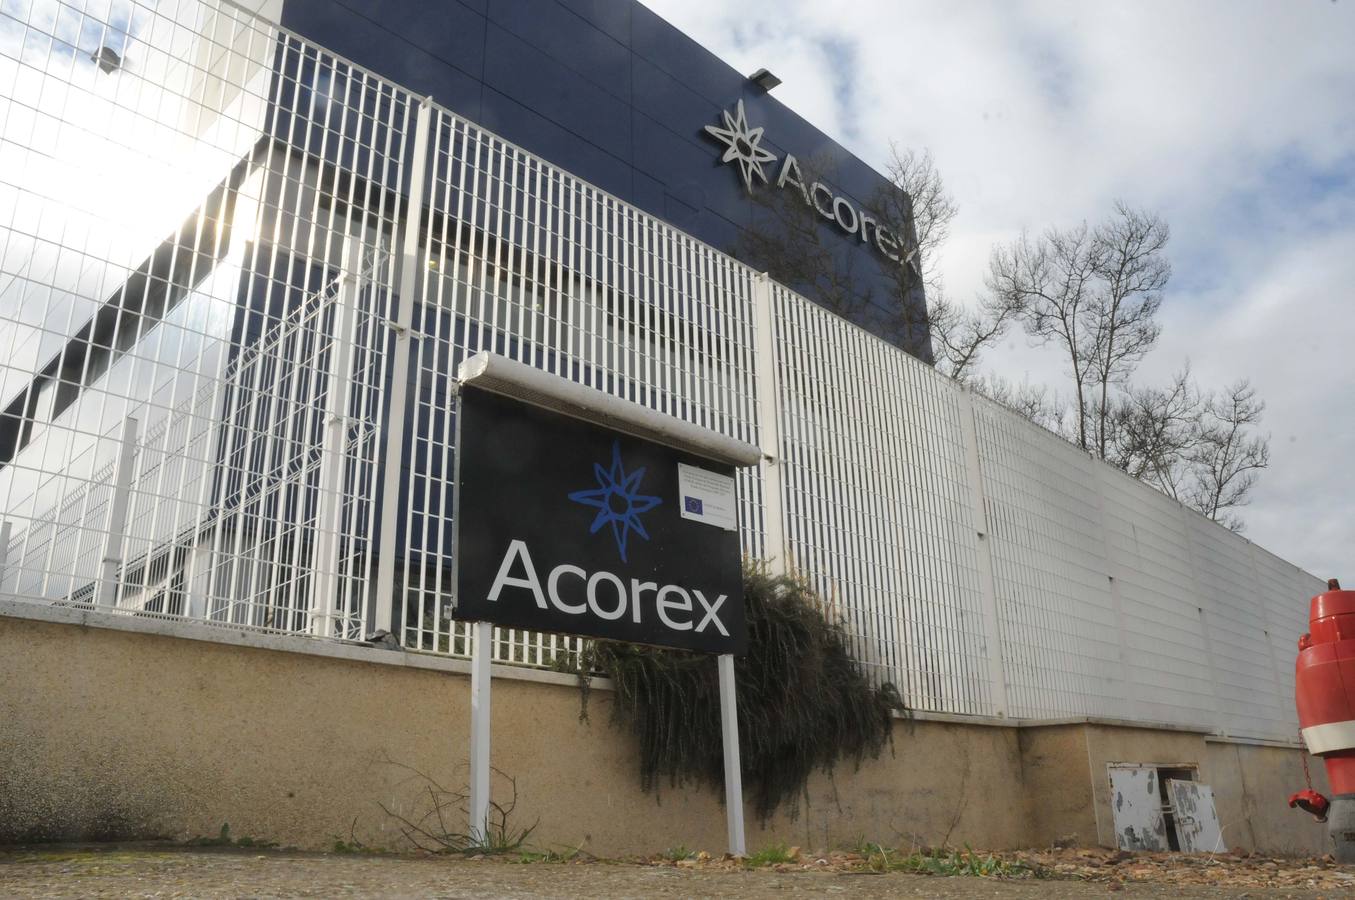 La crisis de Acorex abre el debate sobre las cooperativas